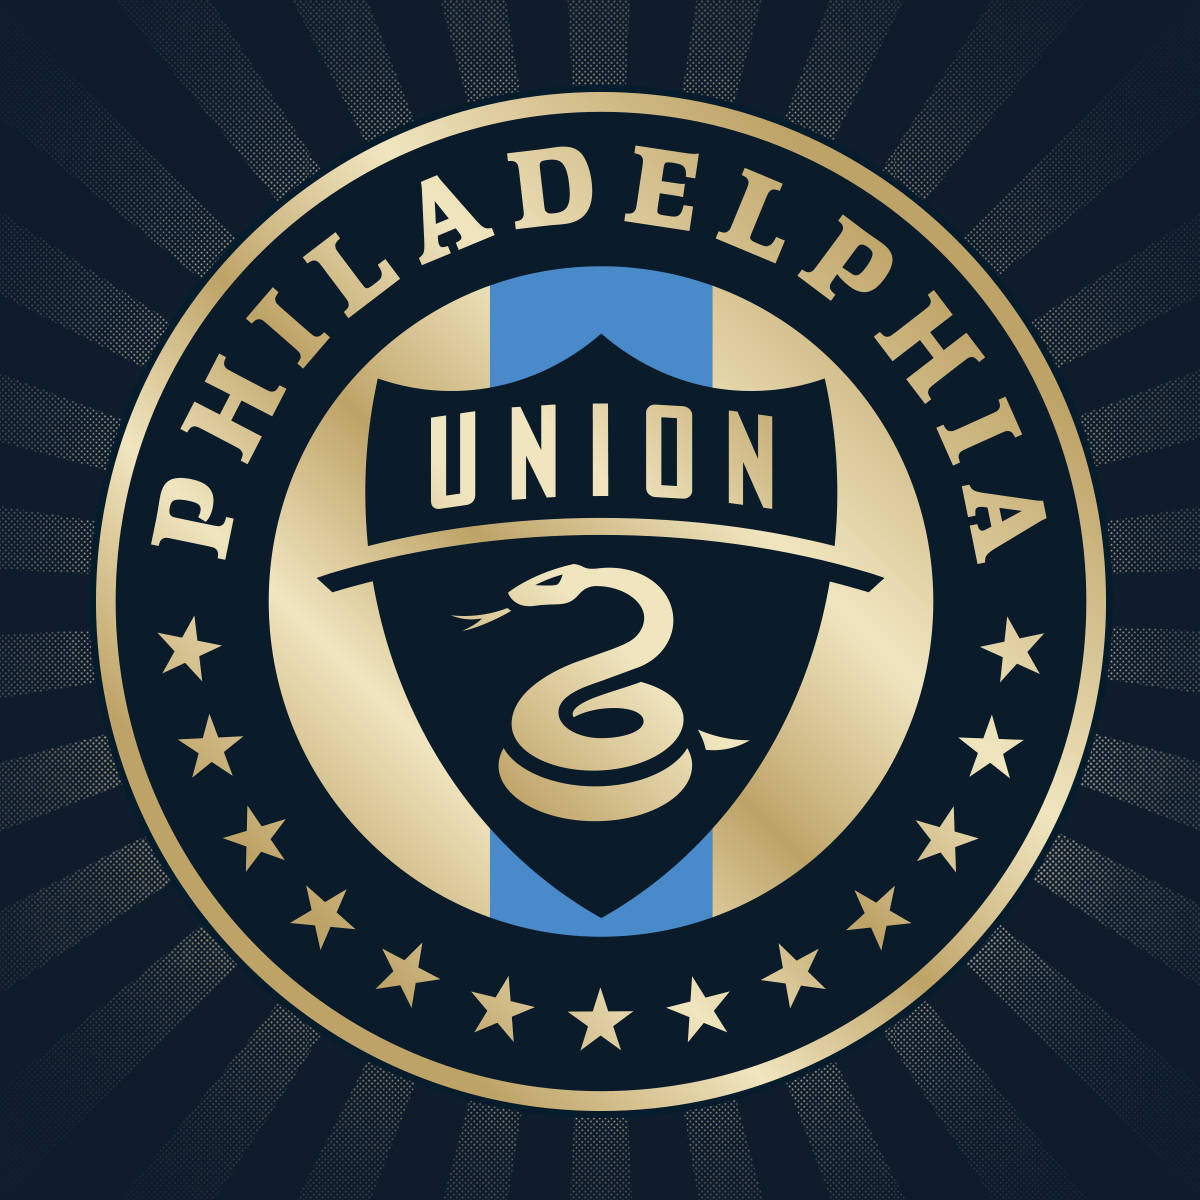 Impresionantelogotipo De Fútbol De Philadelphia Union Fondo de pantalla